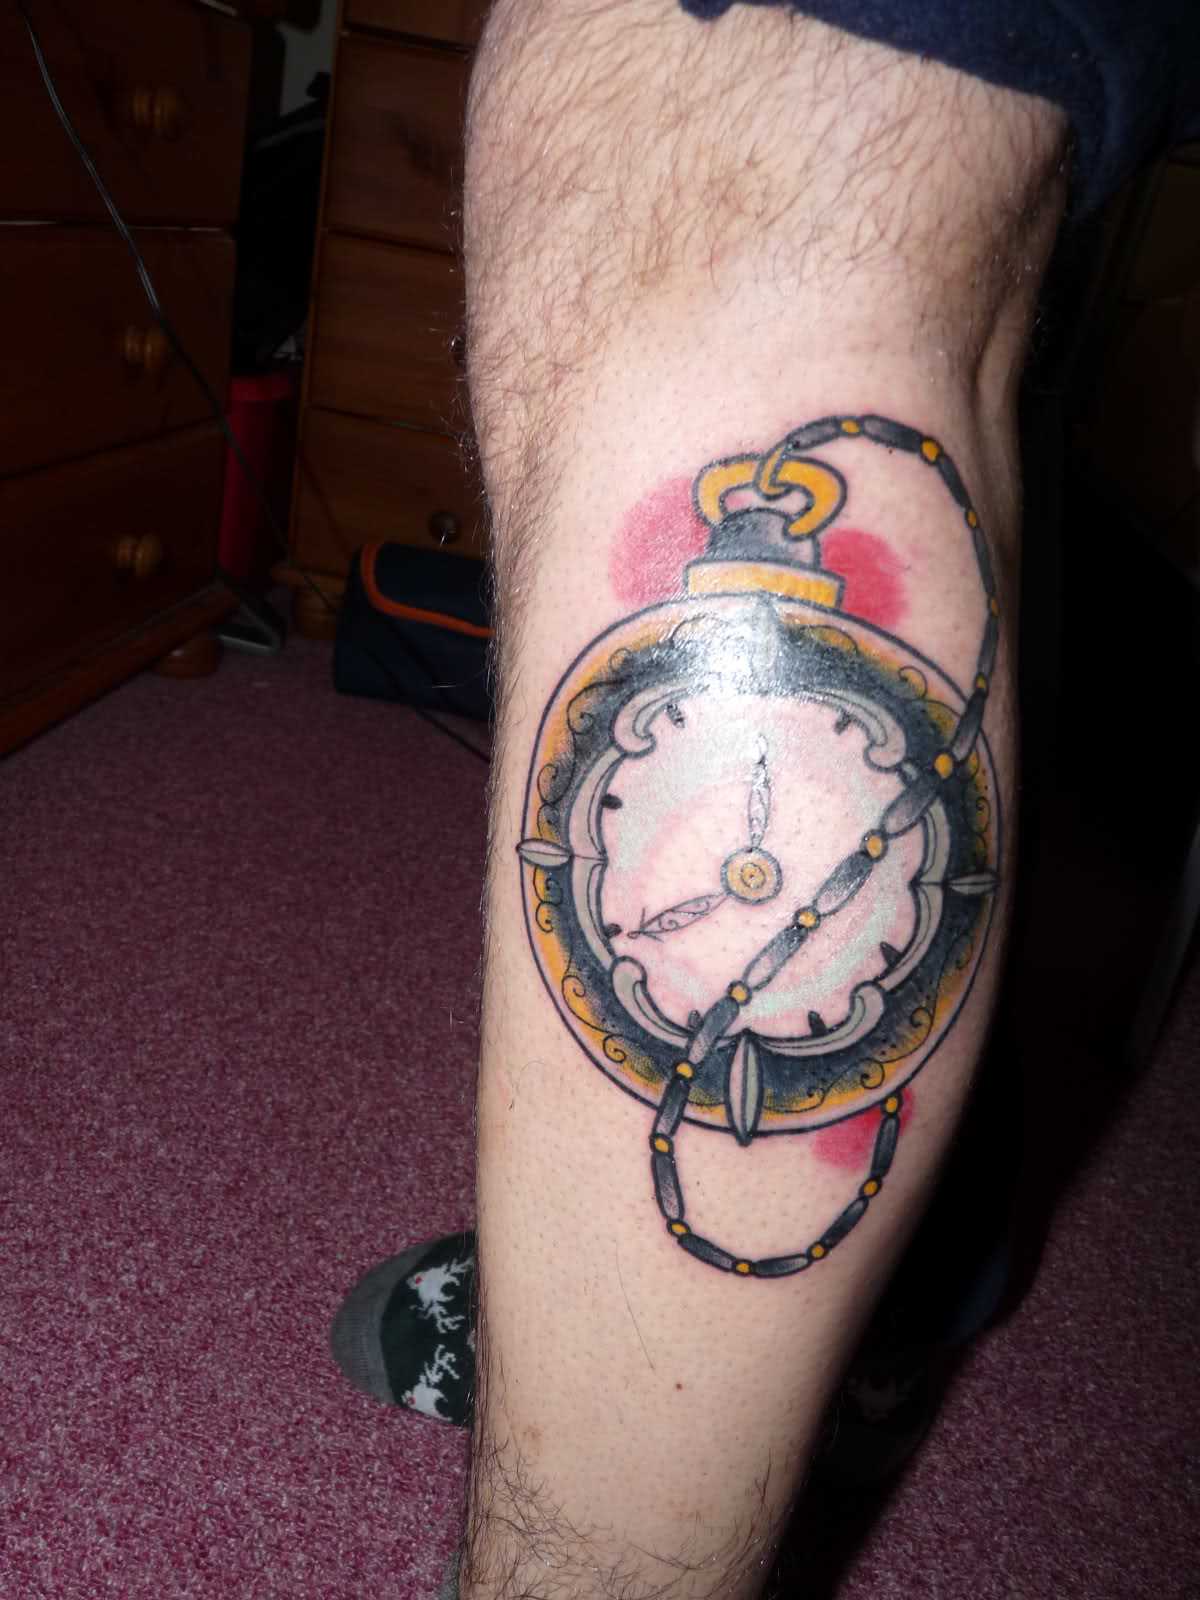 Tatuagem na perna de um cara - de relógios de bolso